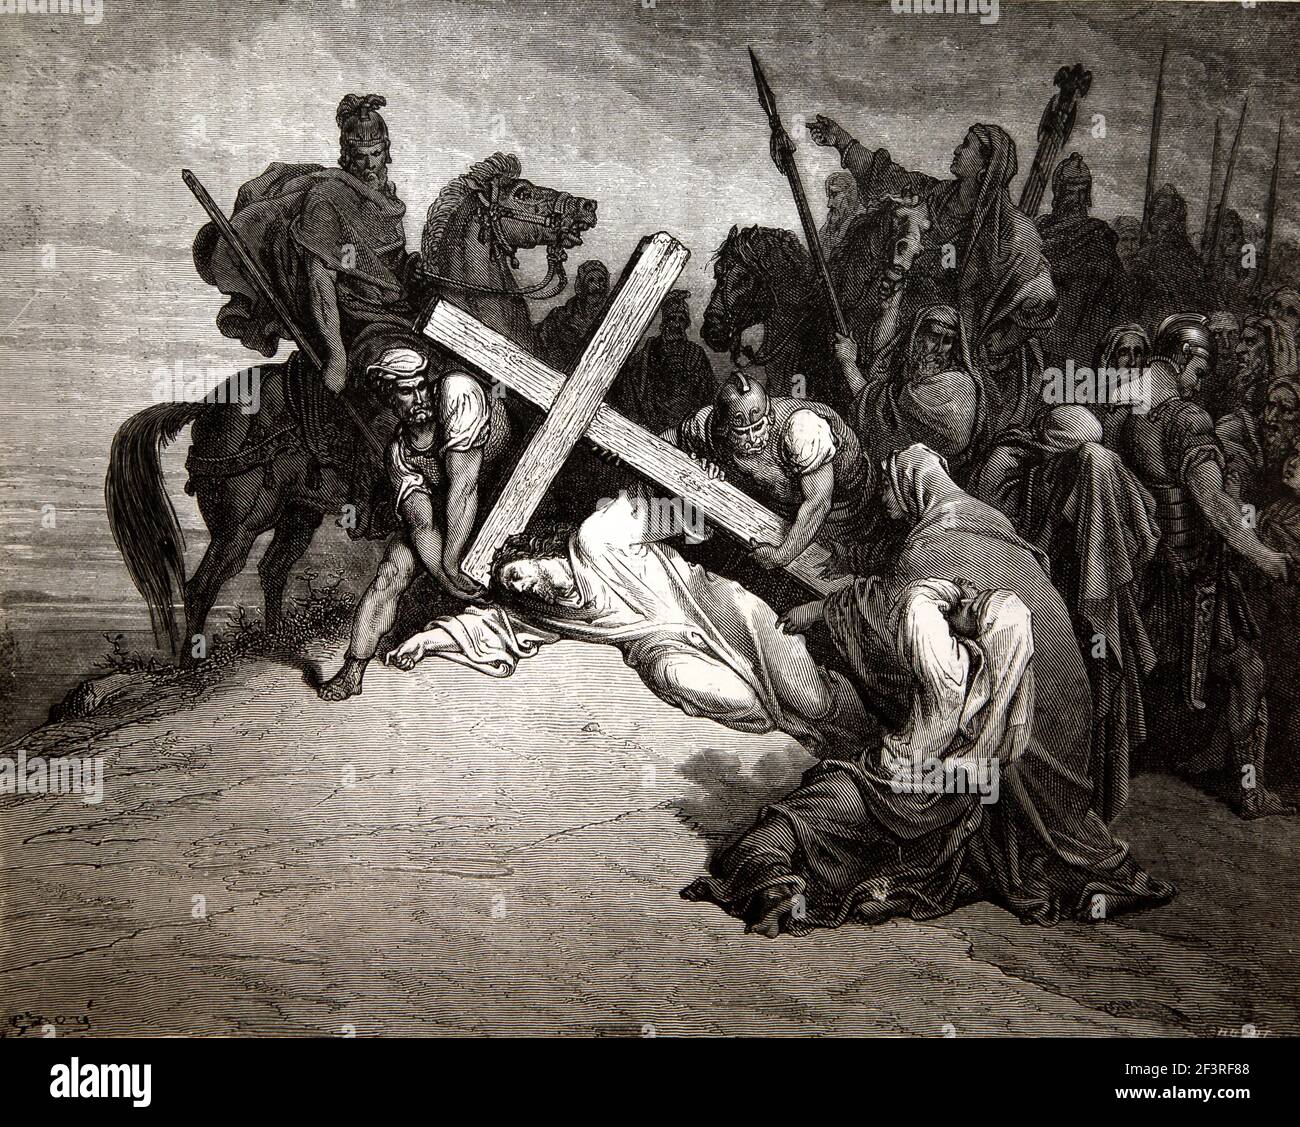 Storie bibliche - Illustrazione di Gesù 'l'arrivo al Calvario' Cristo cade sotto la Croce dal nuovo Testamento Matteo 27:33-34 Foto Stock